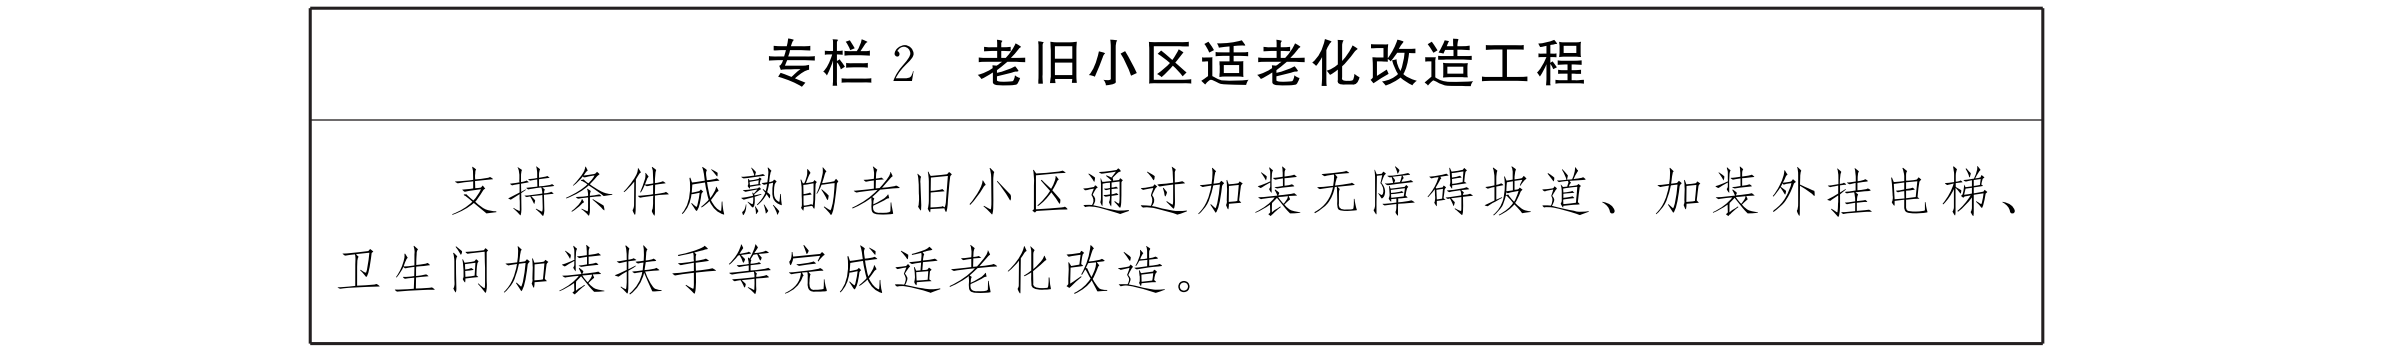 云南省人民政府办公厅关于印发云南省养老服务体系建设“十三五”规划的通知_06.png